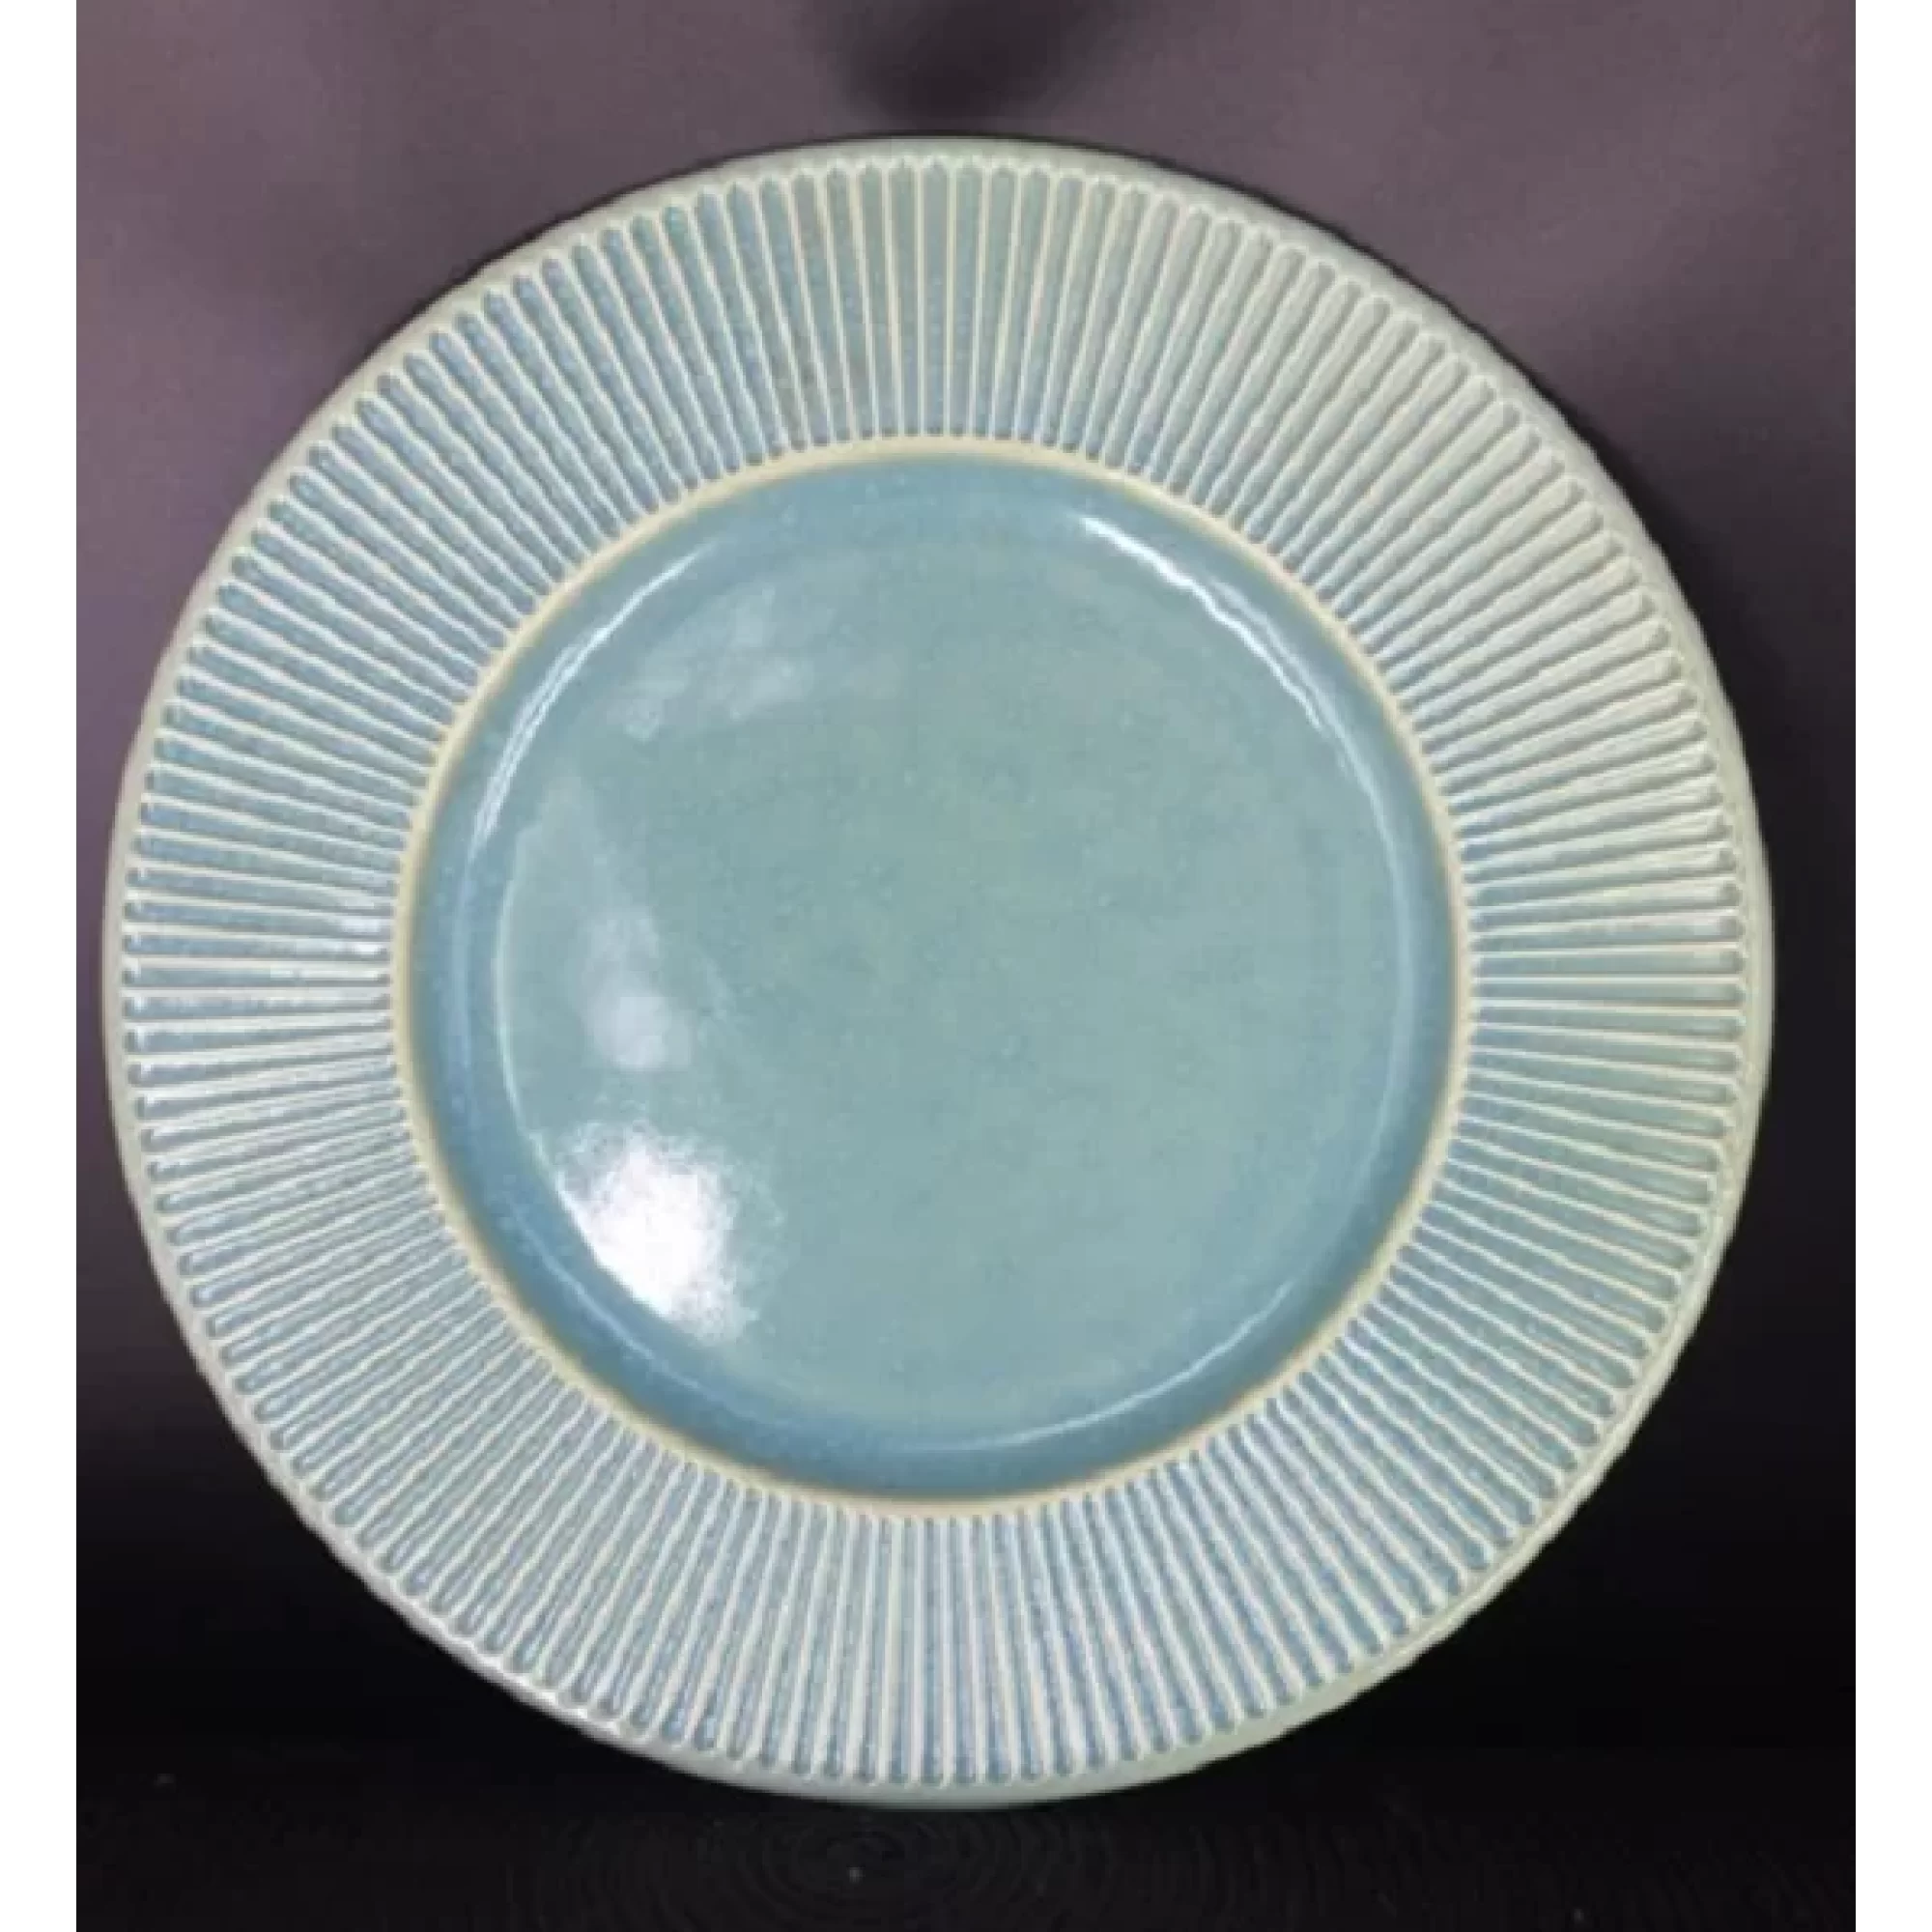 Keramika Krm 1254 Servis Tabağı Seramik Karışık Dijital